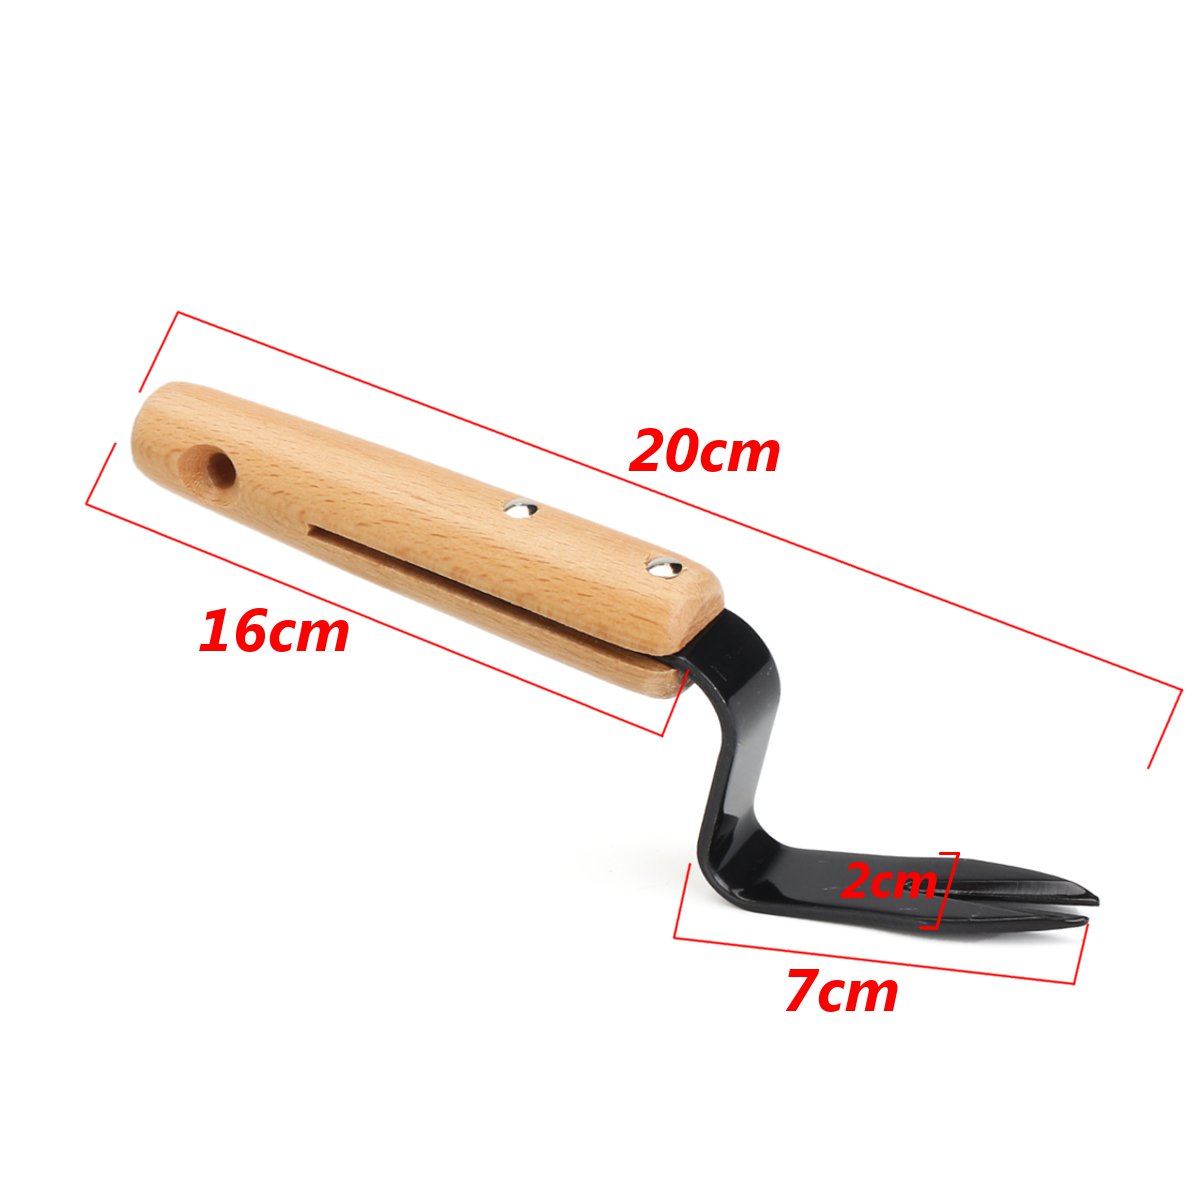 20cm-Forked-Head-Hand-Weeder-Puller-Patio-wood-handle-Garden-Remove-Weeds-1233517-3